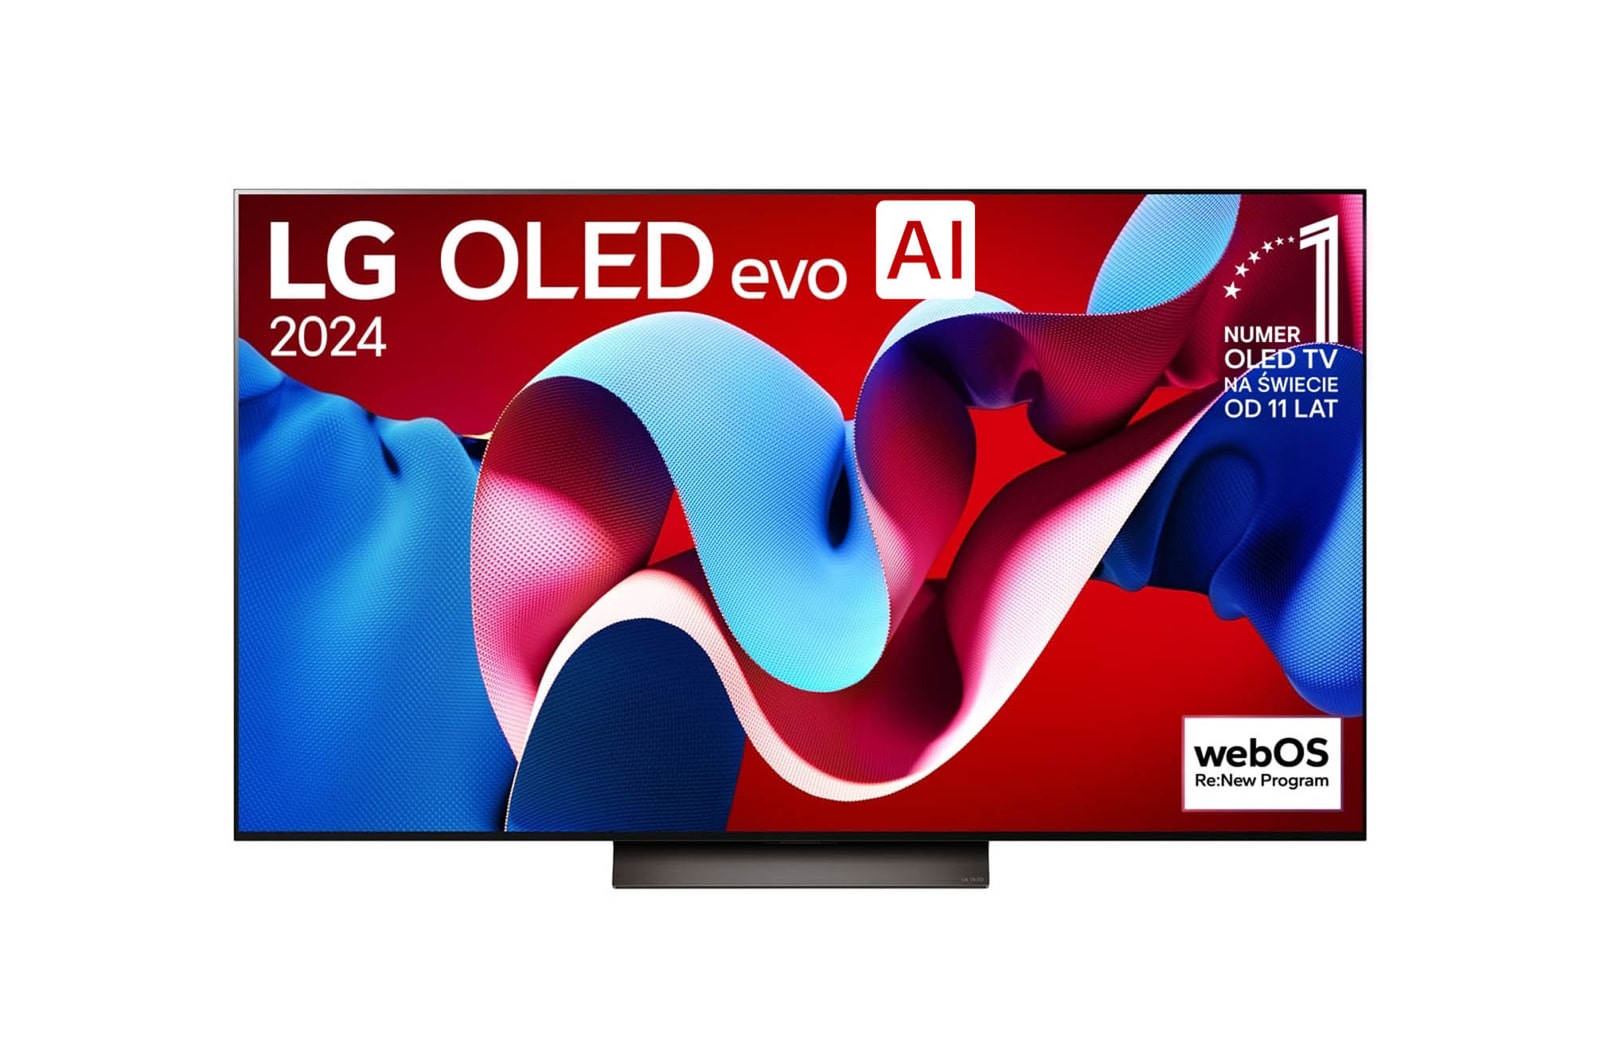 Widok z przodu LG OLED evo AI TV, OLED C4, logo emblematu „11 Years of World Number 1 OLED” i logo programu webOS Re:New na ekranie, a także na soundbarze poniżej